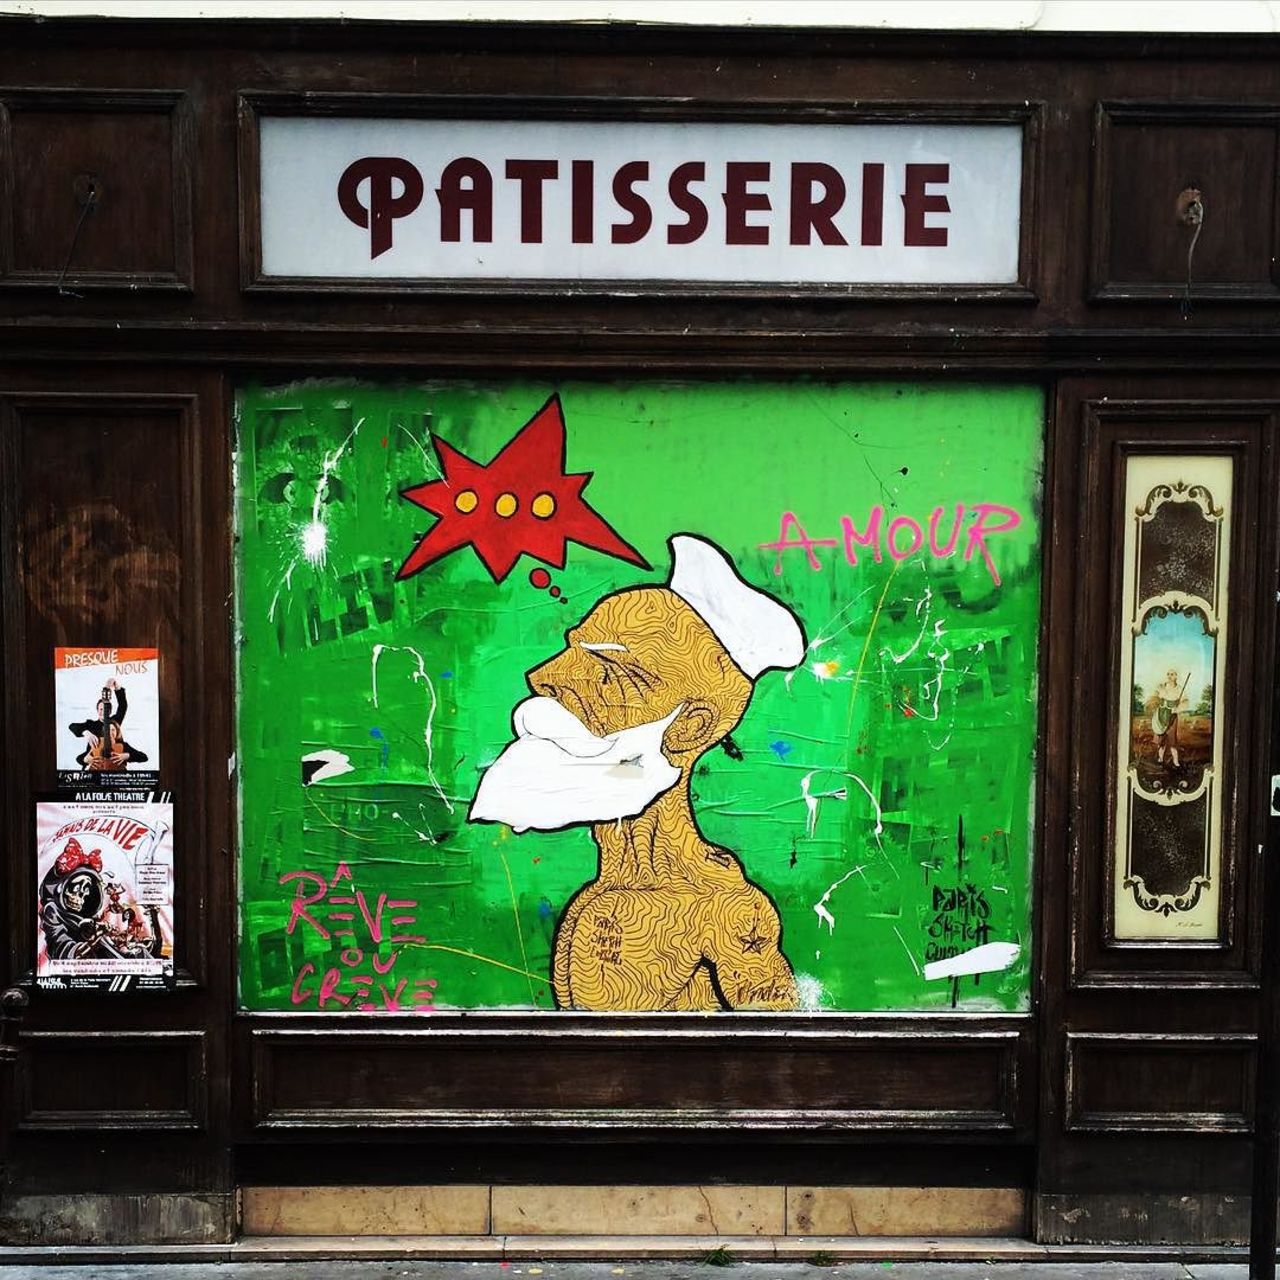 #Paris #graffiti photo by @julienvermeulen http://ift.tt/1S1sao1 #StreetArt https://t.co/nHgiuxUp6I